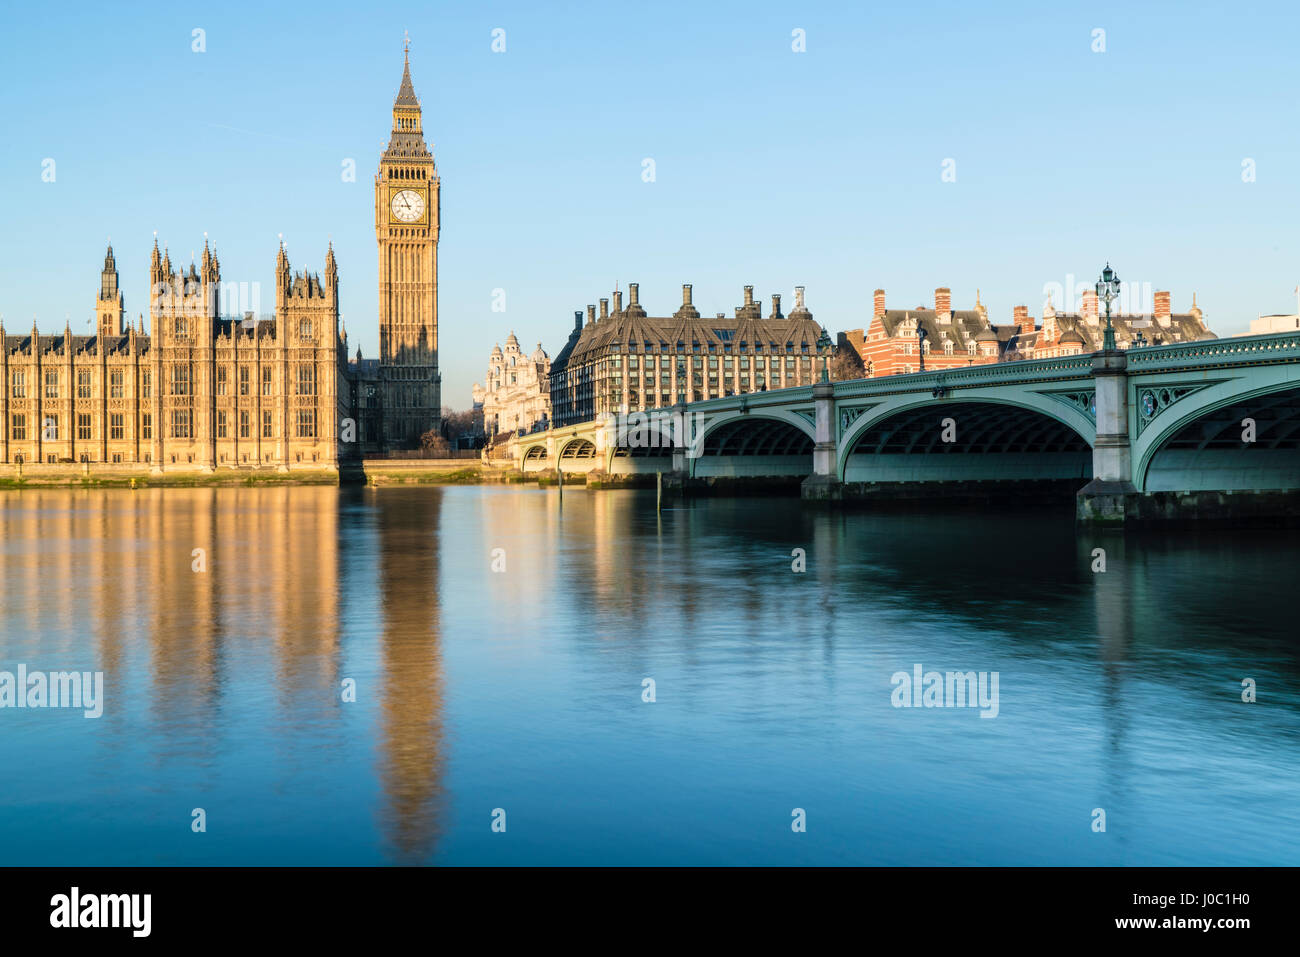 Big Ben, le Palais de Westminster, Site du patrimoine mondial de l'UNESCO, et le pont de Westminster, Londres, Angleterre, Royaume-Uni Banque D'Images